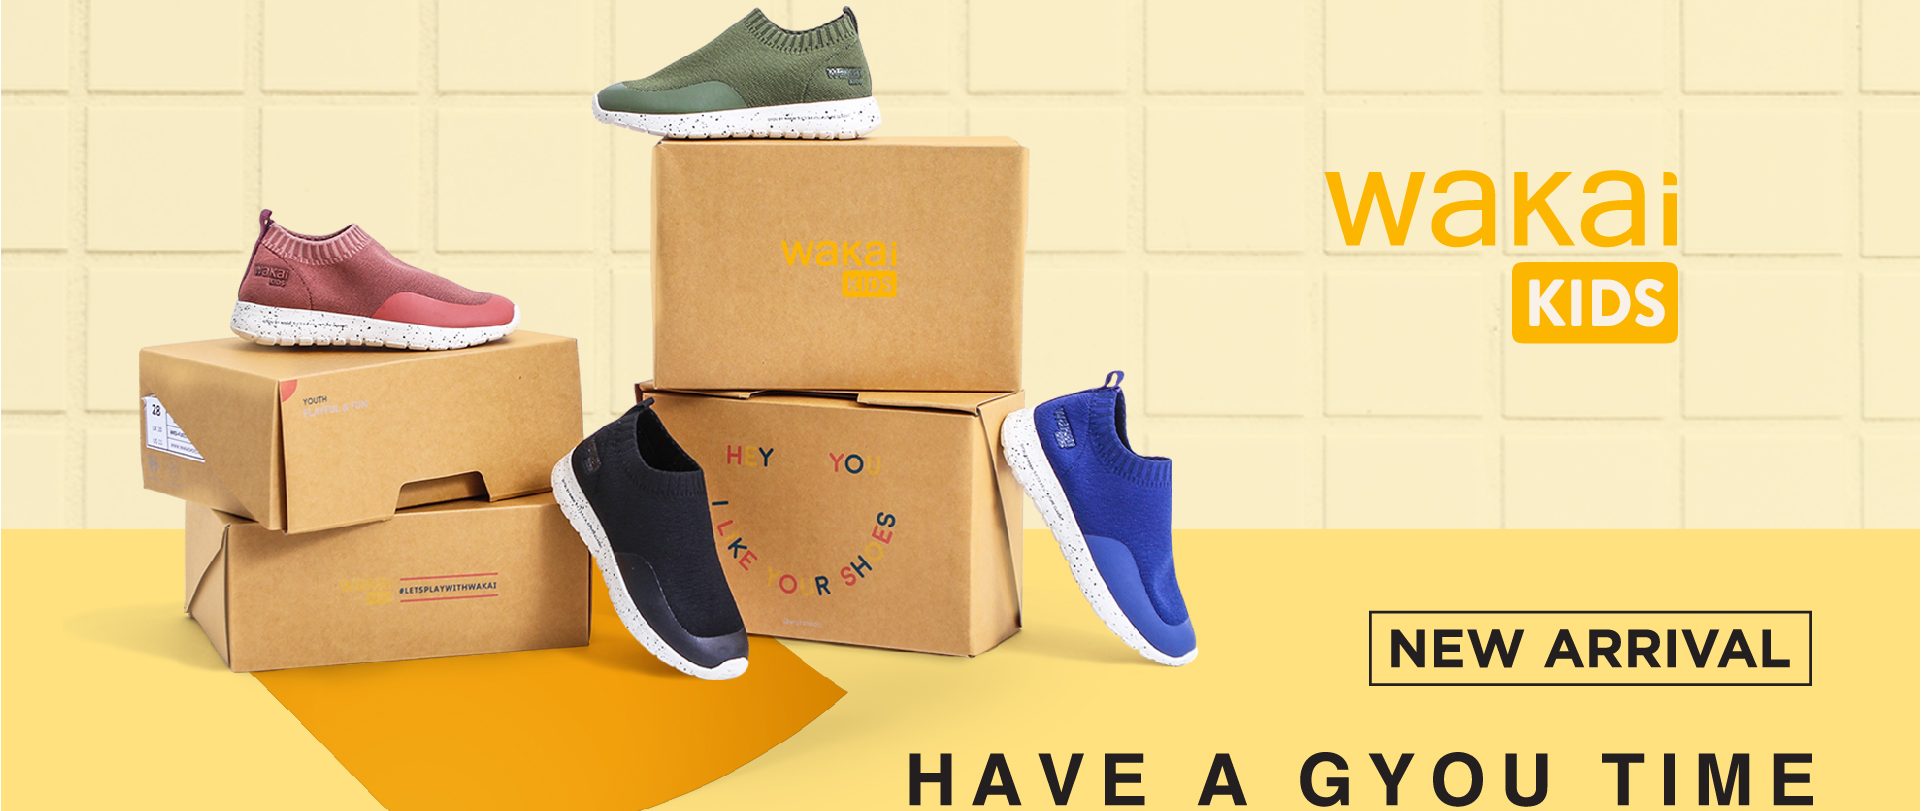 Wakai Kids, Koleksi Sepatu untuk Anak agar Tampil Makin Keren!